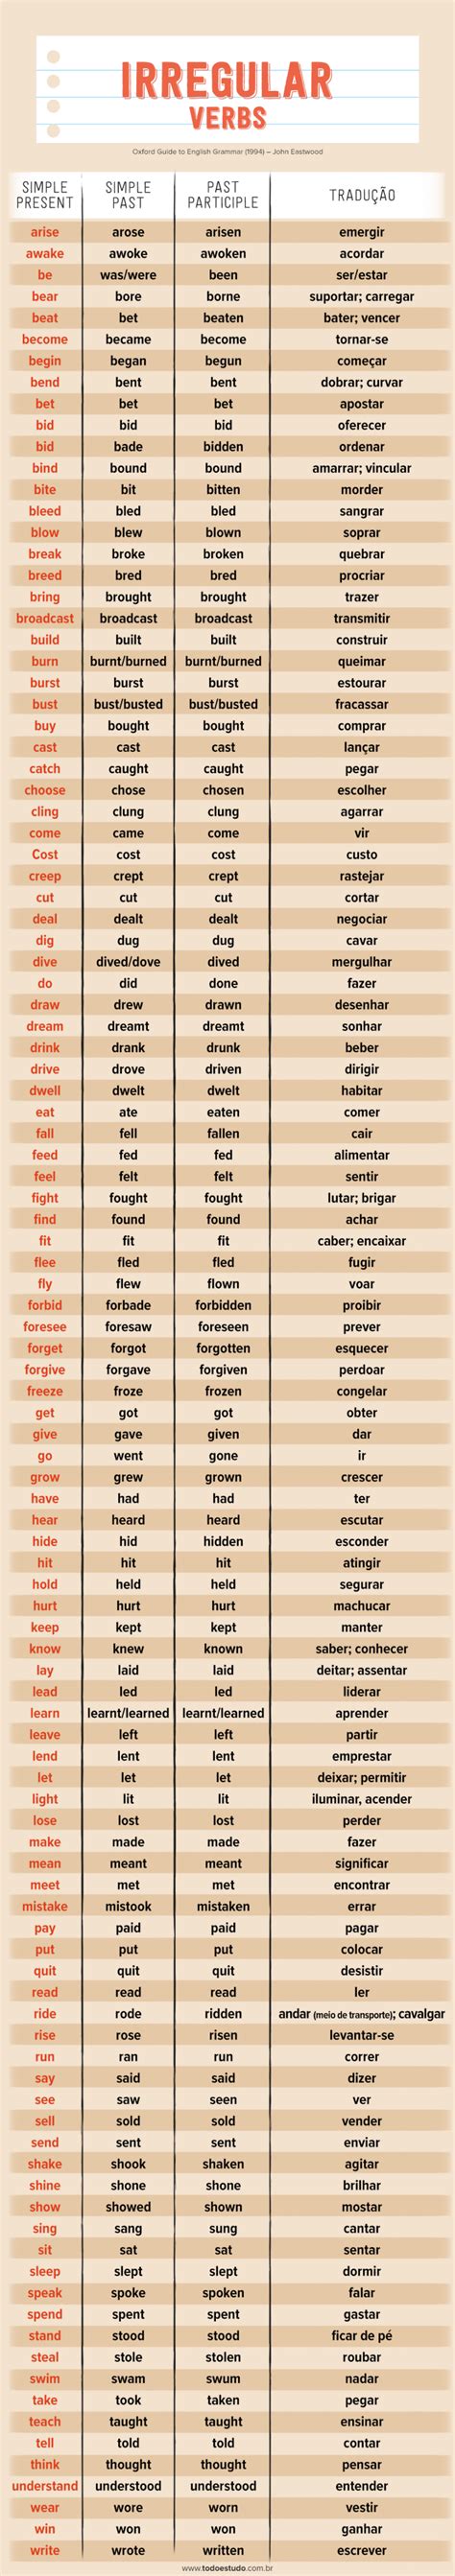 Verbos Irregulares Em Ingl S Como Identificar E Conjugar